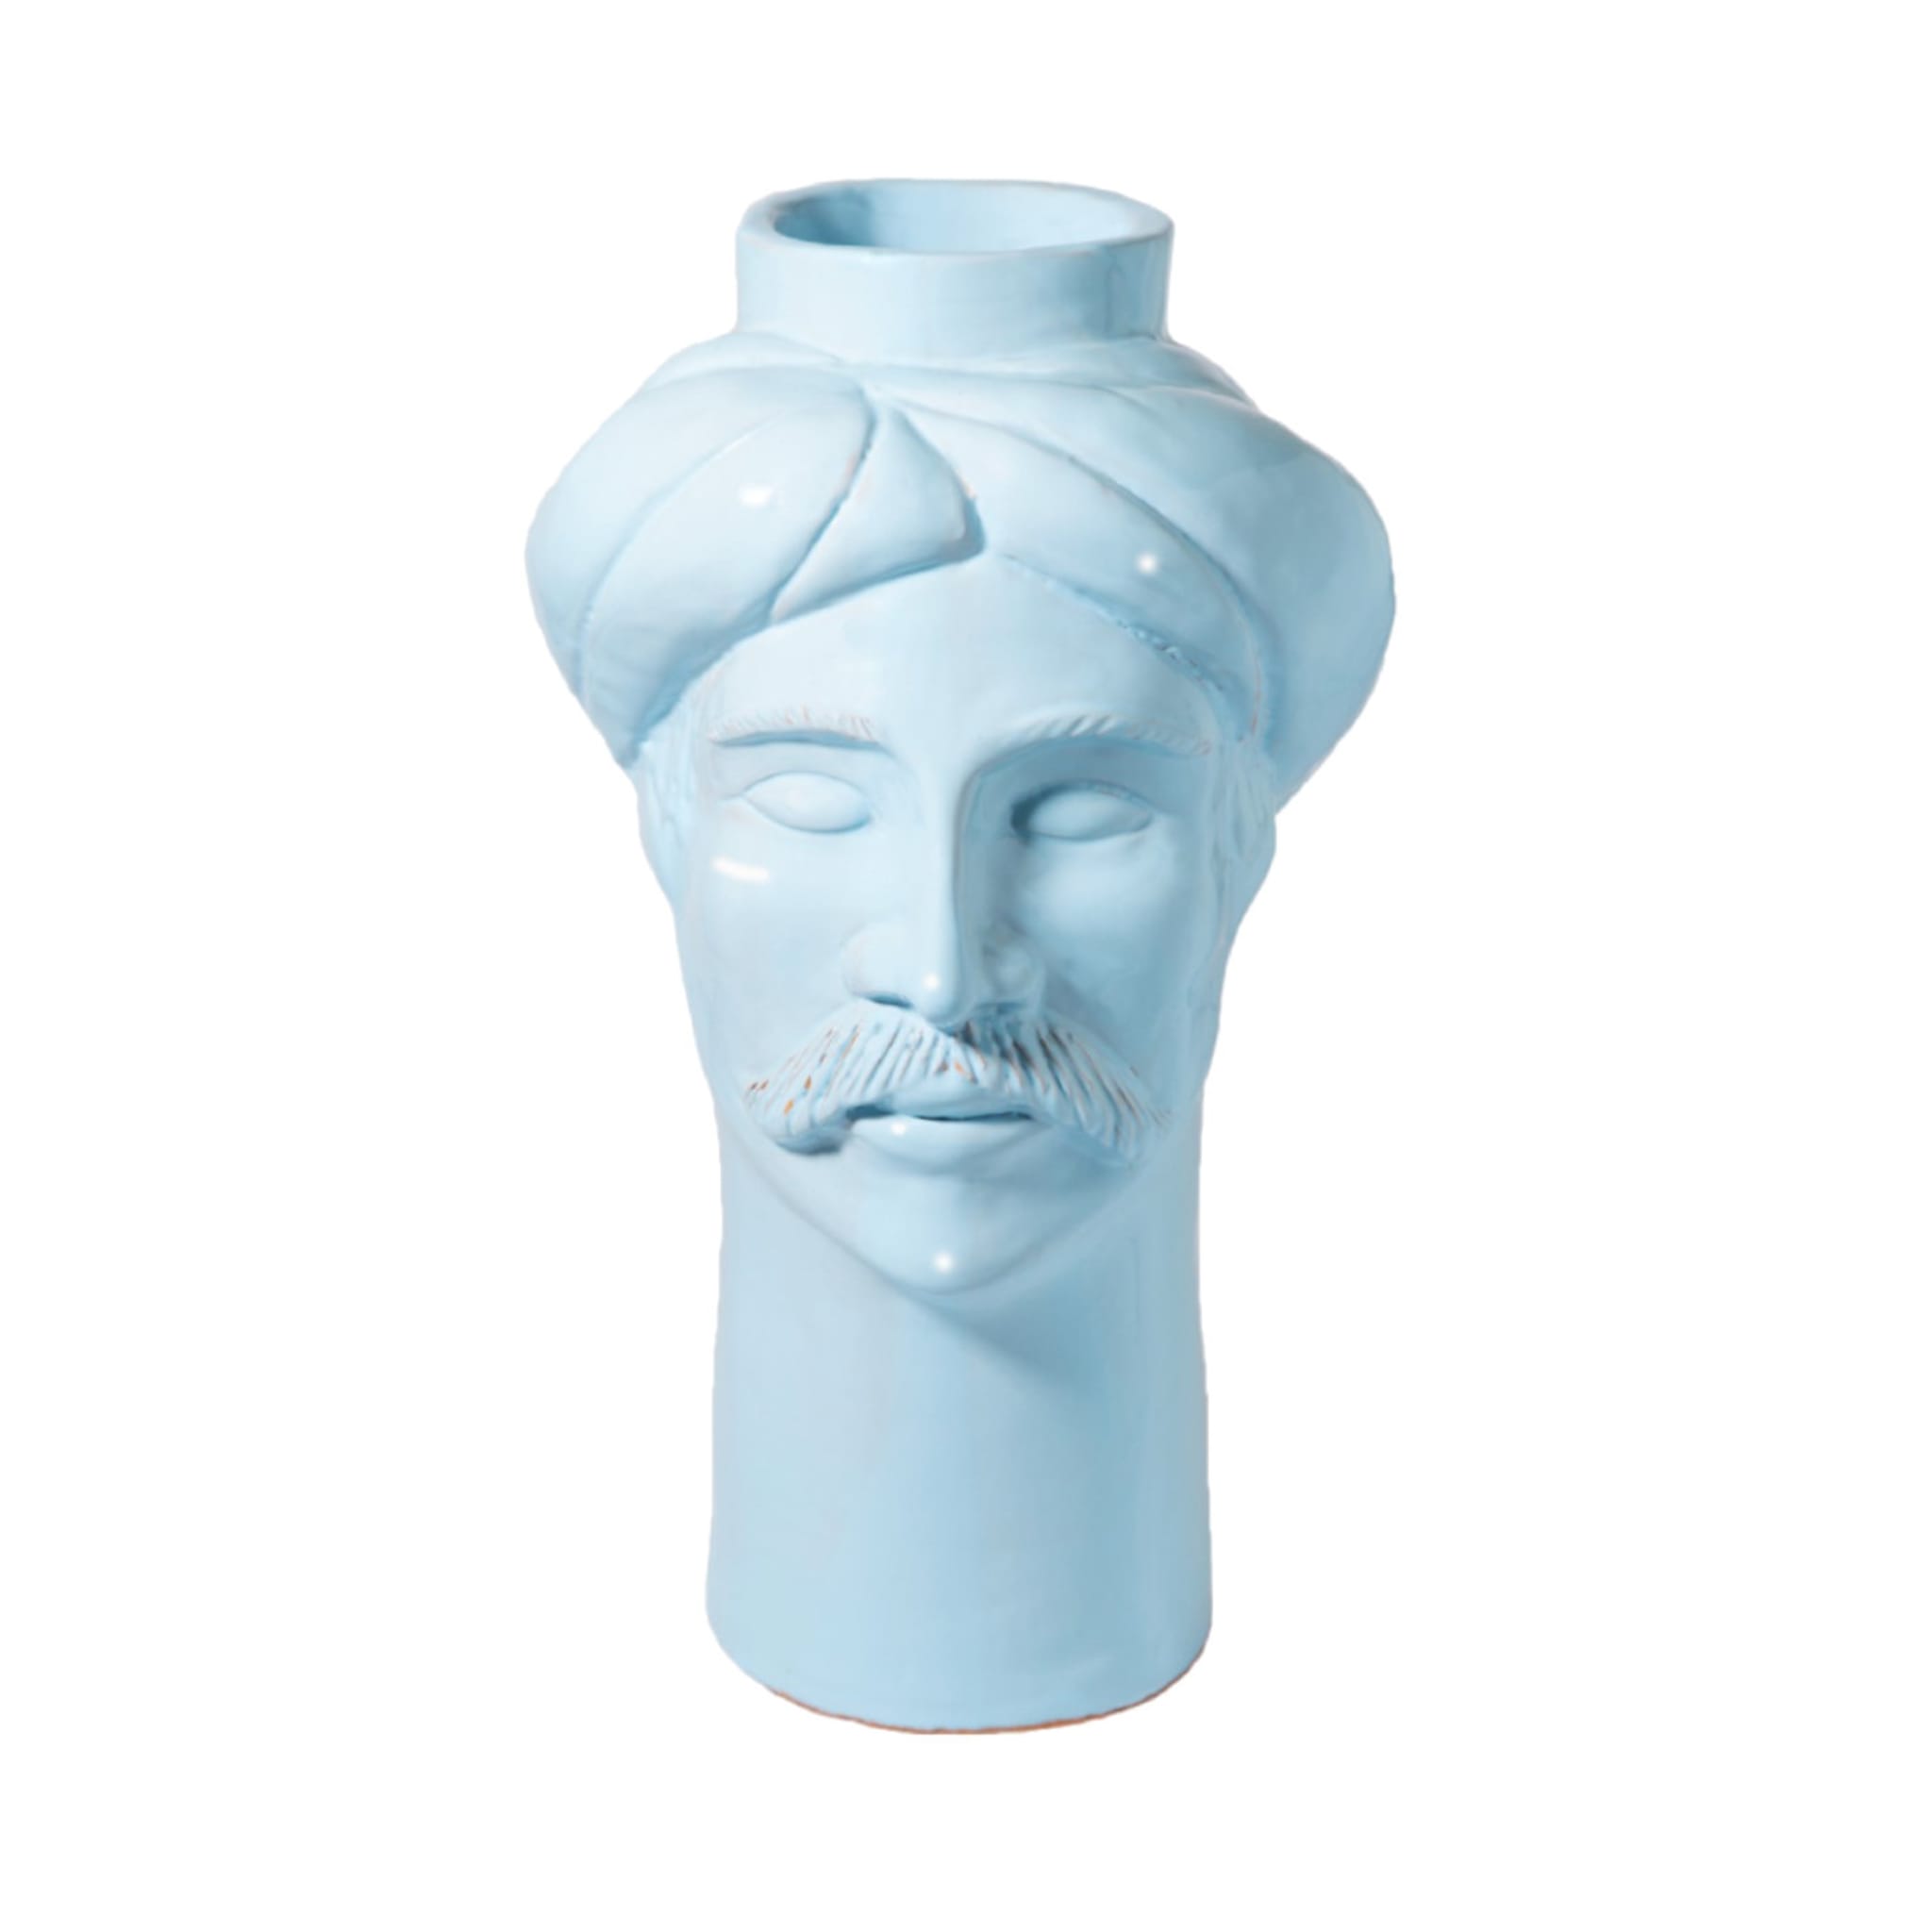 Solimano Hellblaue Vase - Hauptansicht